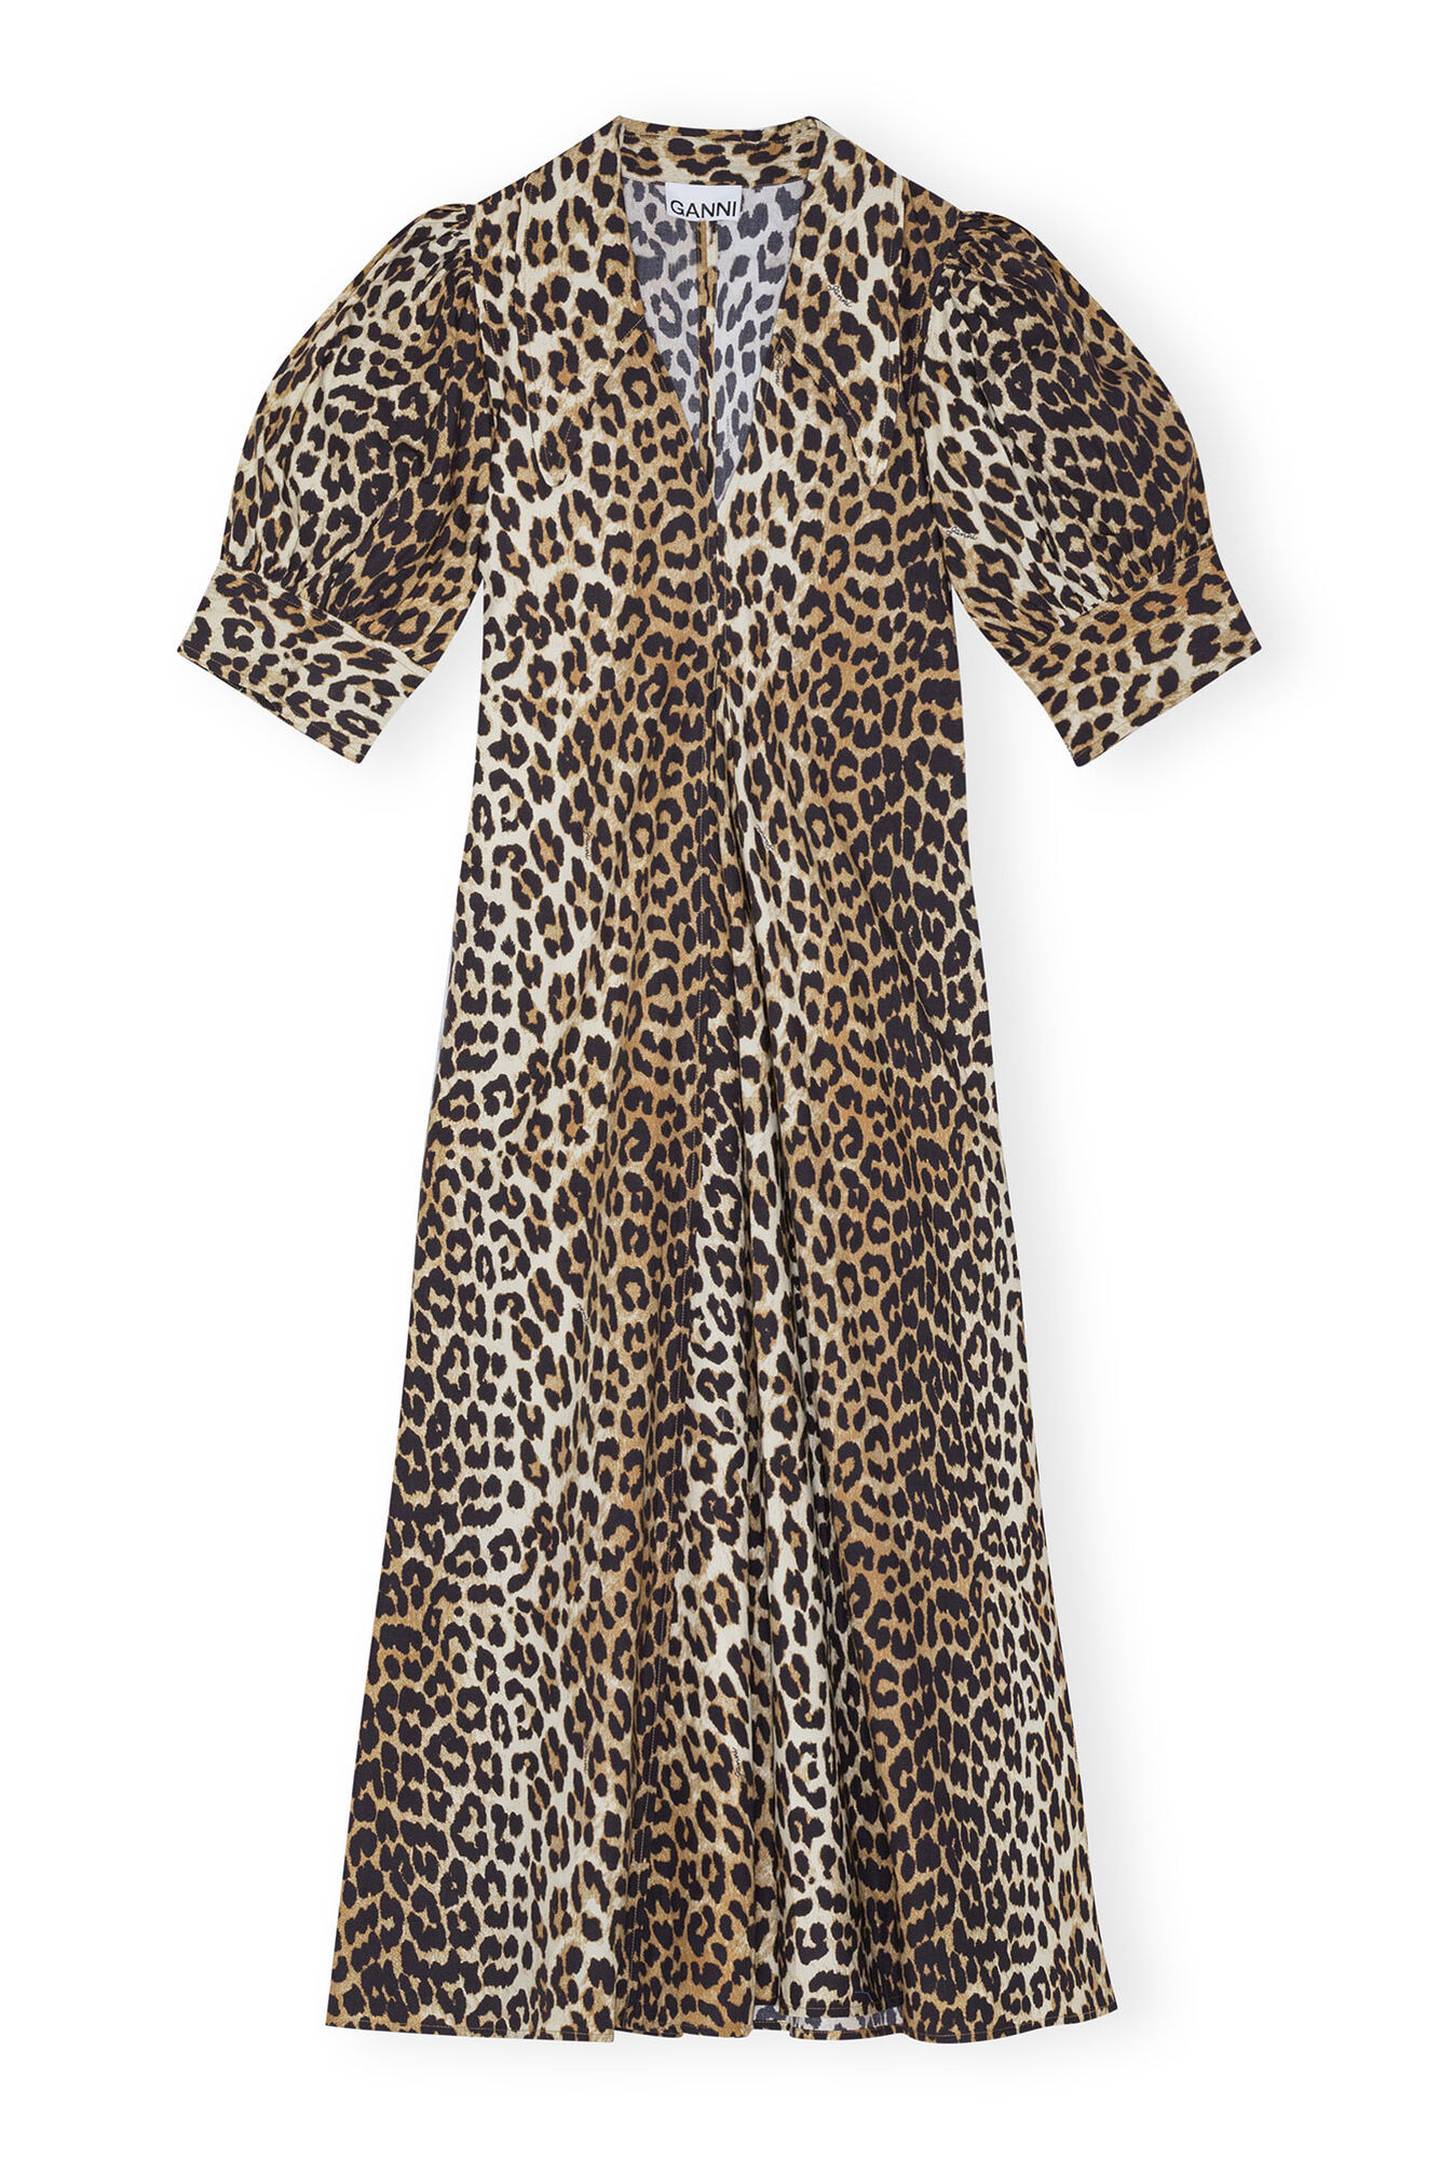 Leopard v-neck dress, €245, Ganni